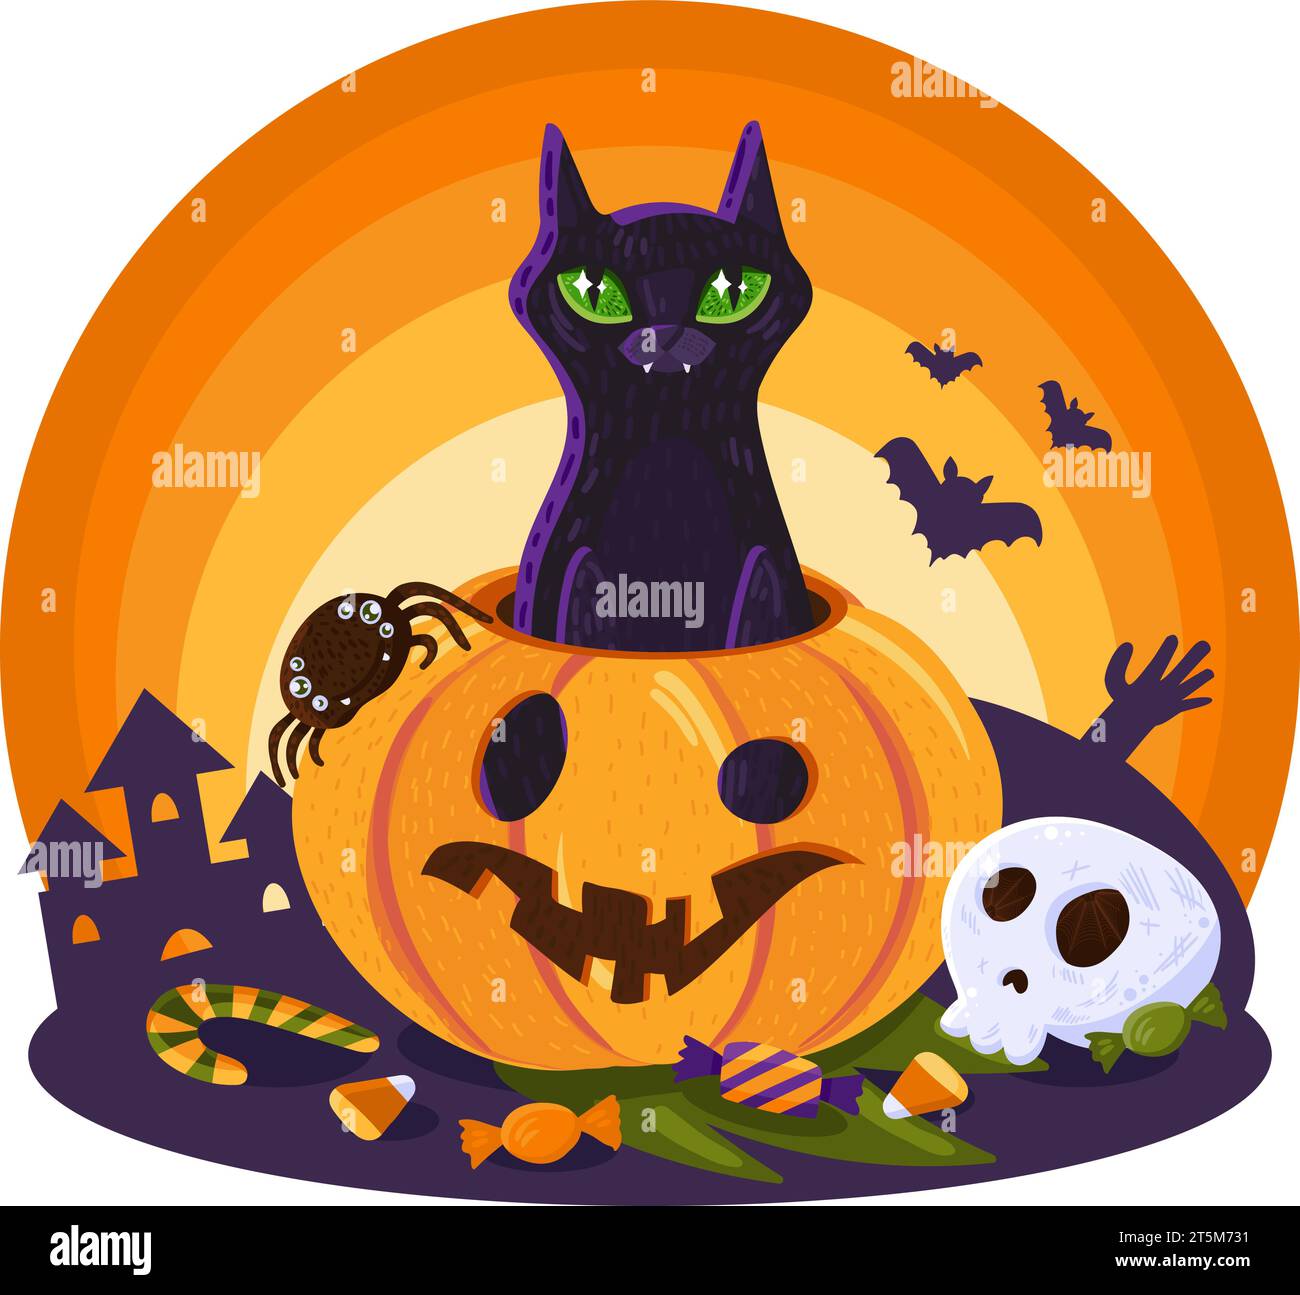 Halloween Black Cat blickt aus dem gruseligen Kürbis hervor, der mit Bonbonknochen und festlichen Halloween-Elementen verziert ist. Arkane Gegenstände für Hexerei und Rituale. Stock Vektor